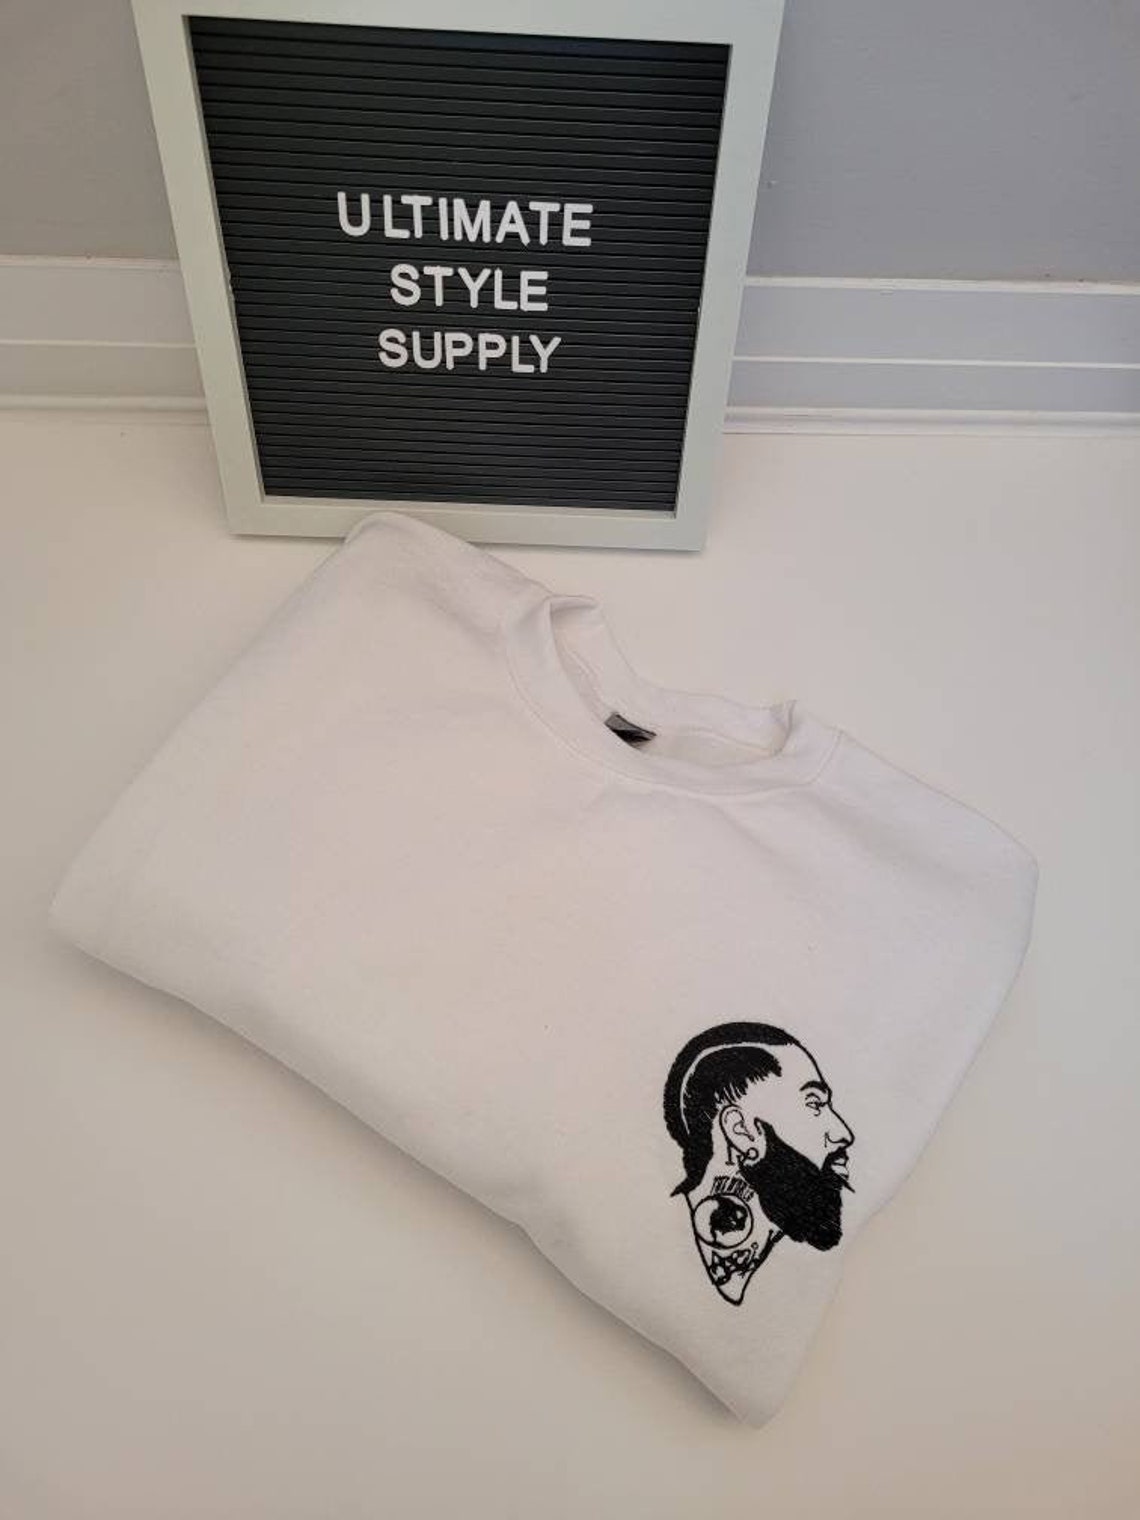 Unisex Nipsey Hussle embroidered sweater unisex gift idea | Etsy